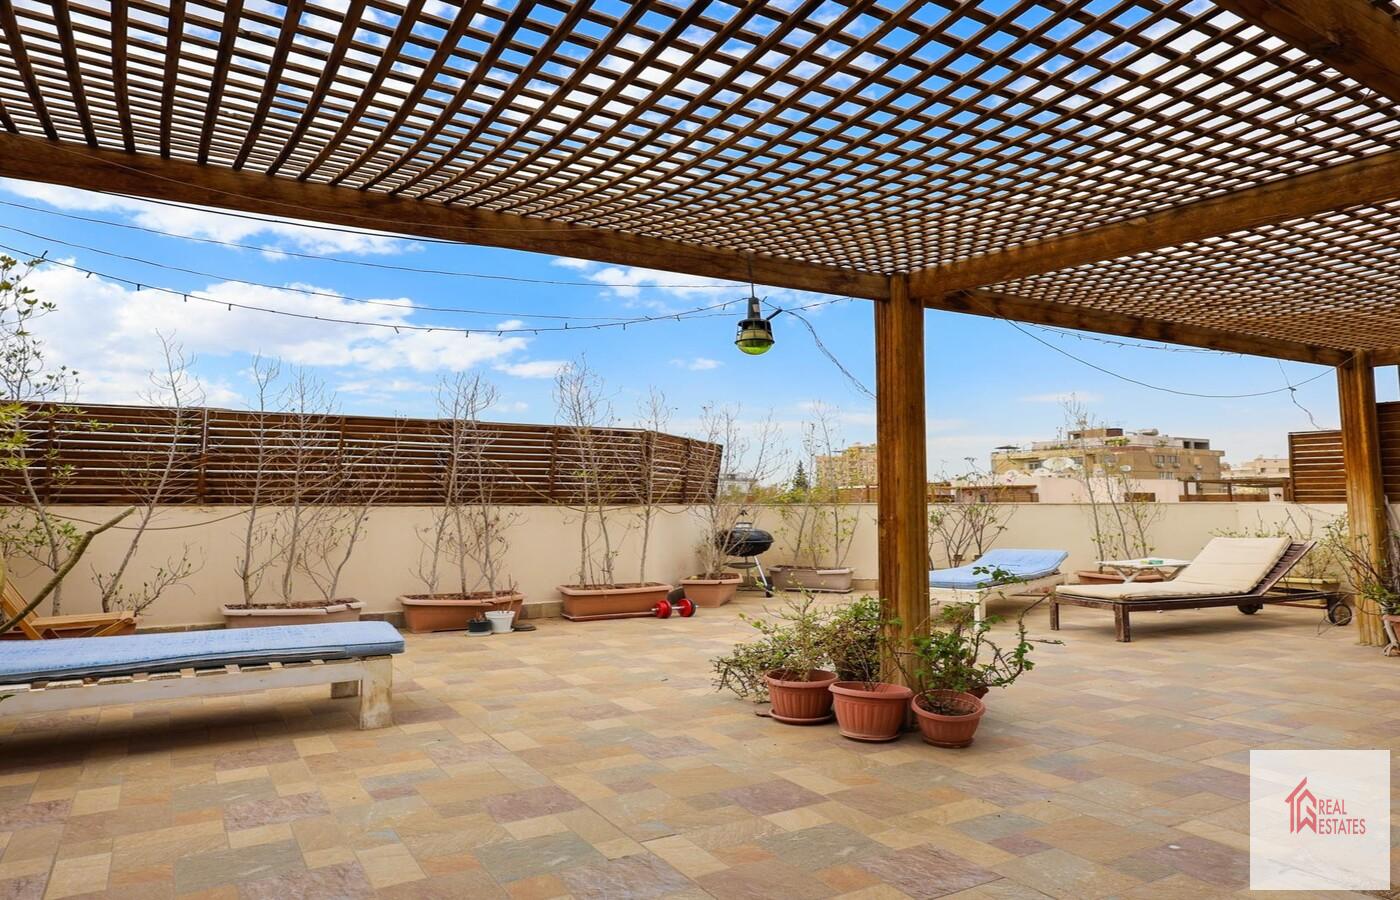 Sarayat maadi'de Kiralık ortak havuzlu Amazing Roof Dubleks - Kahire - Mısır